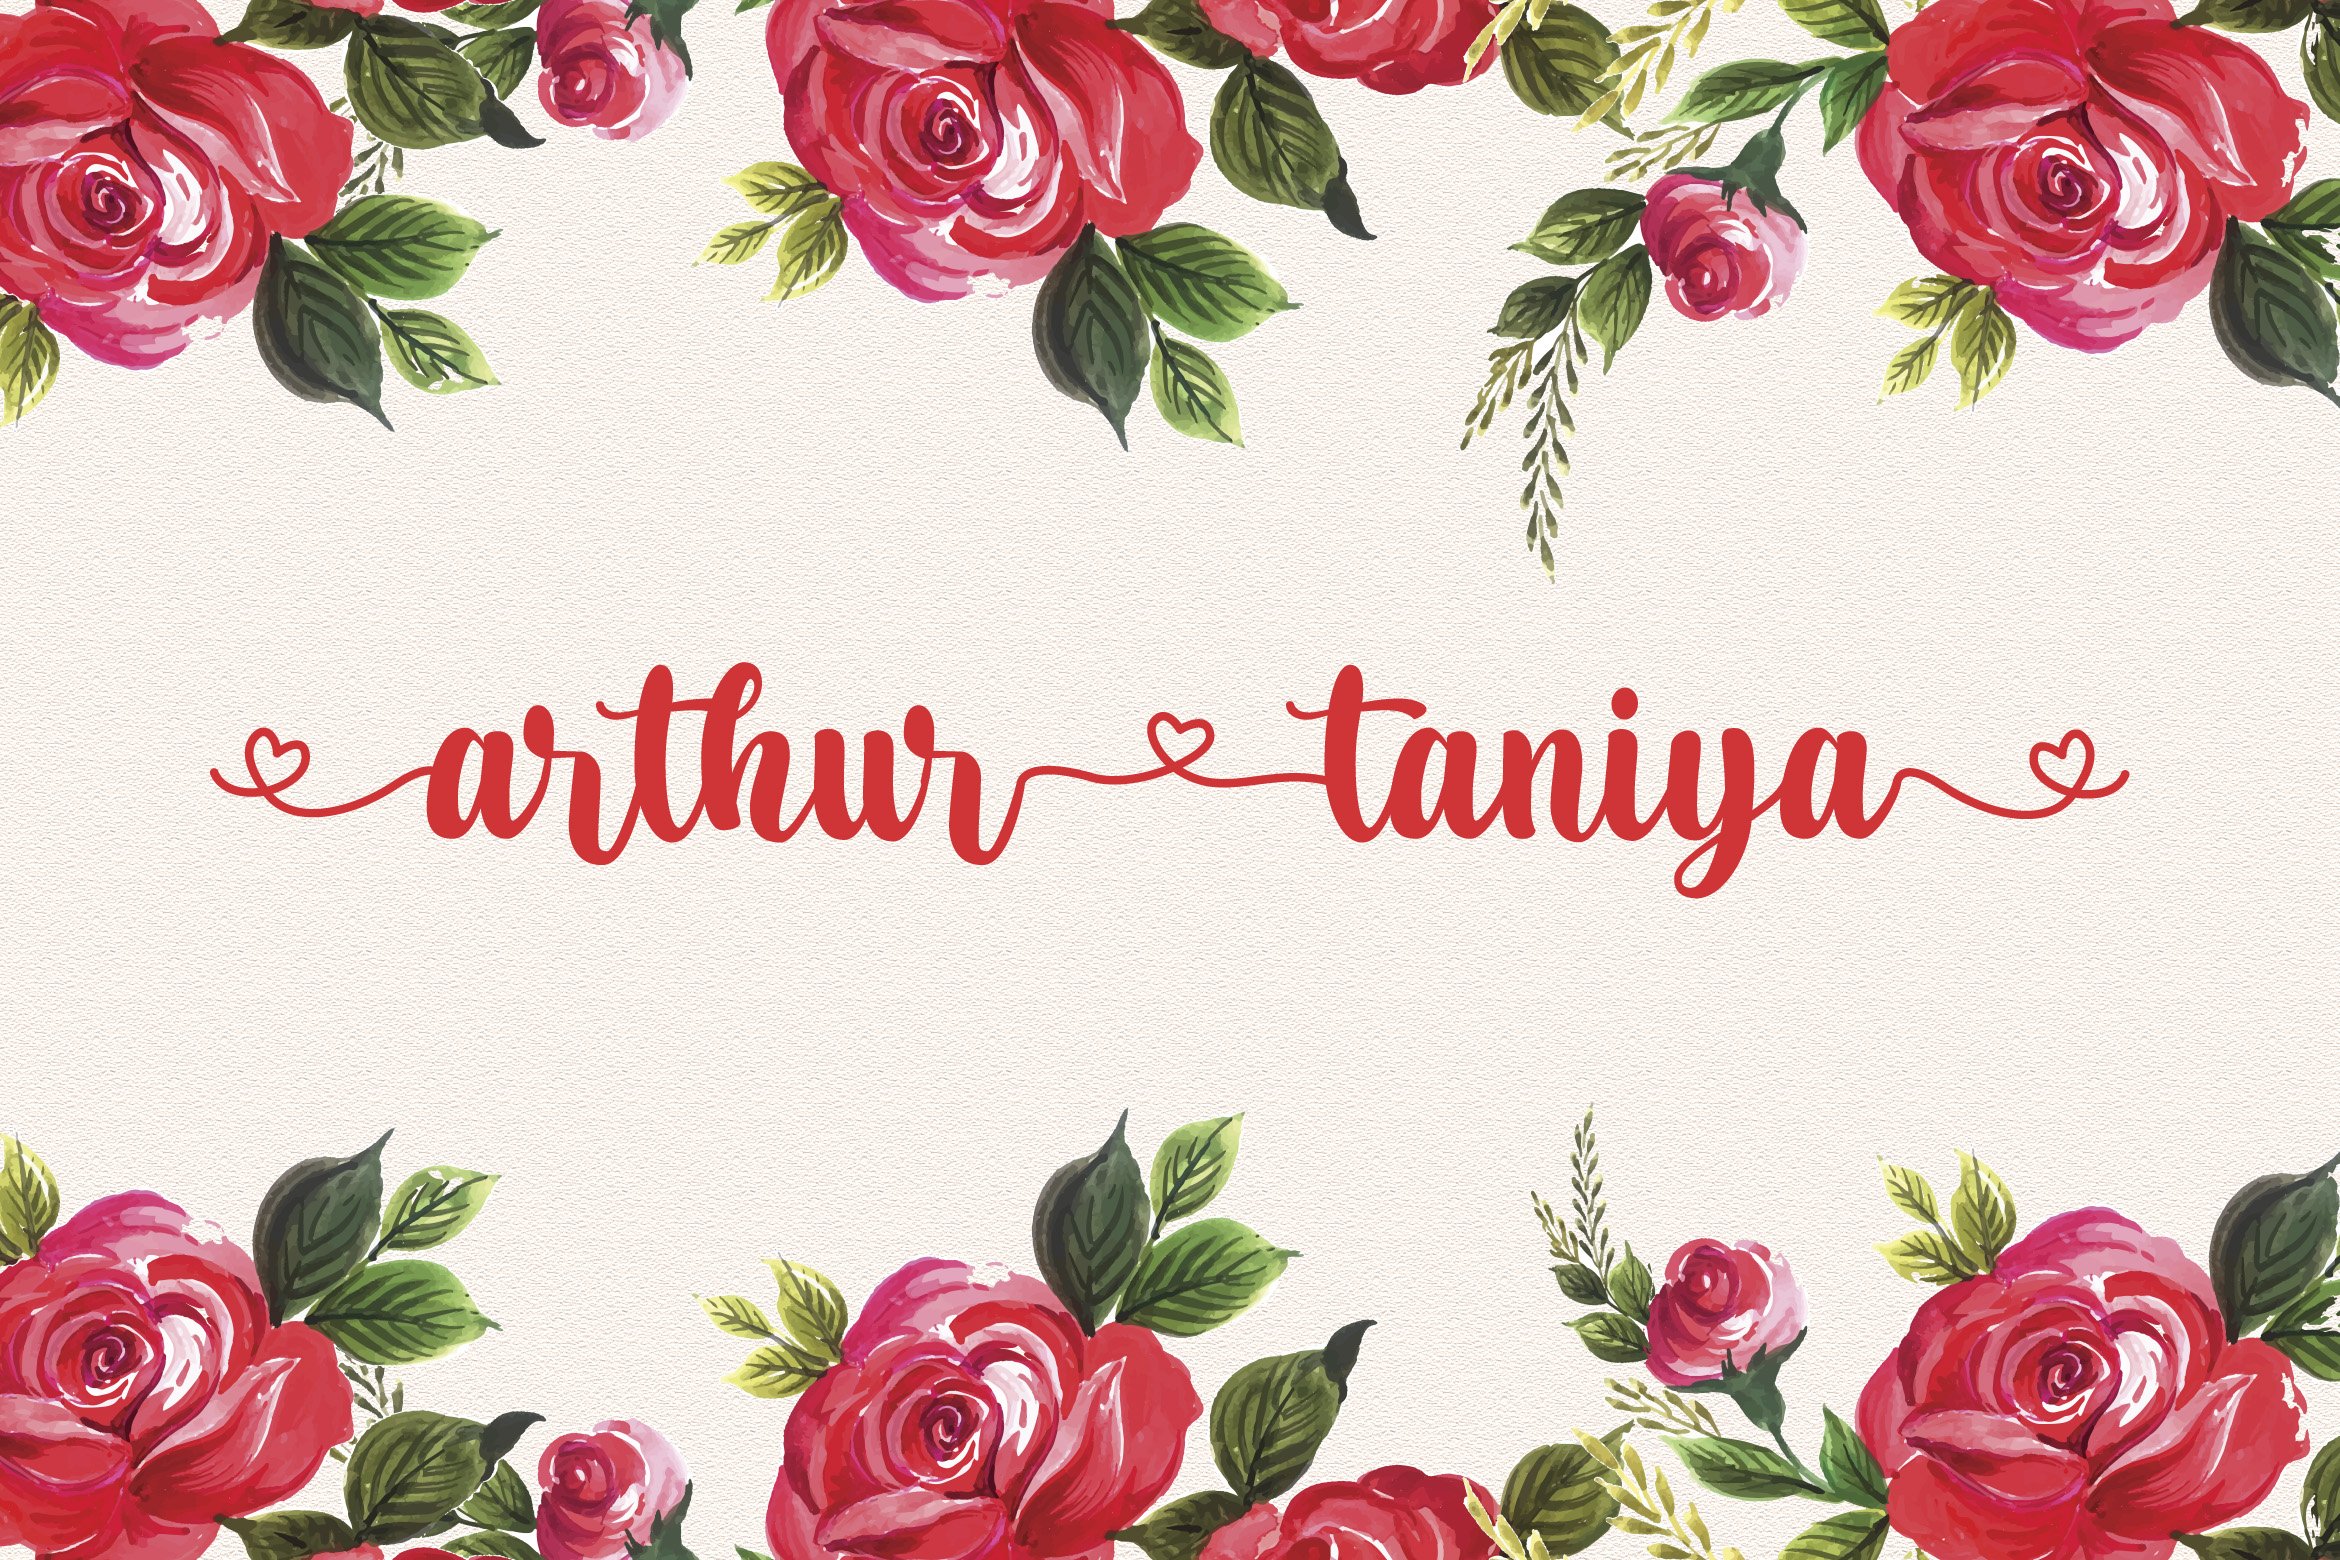 Arthur Taniya - Calligraphy Font cover image.